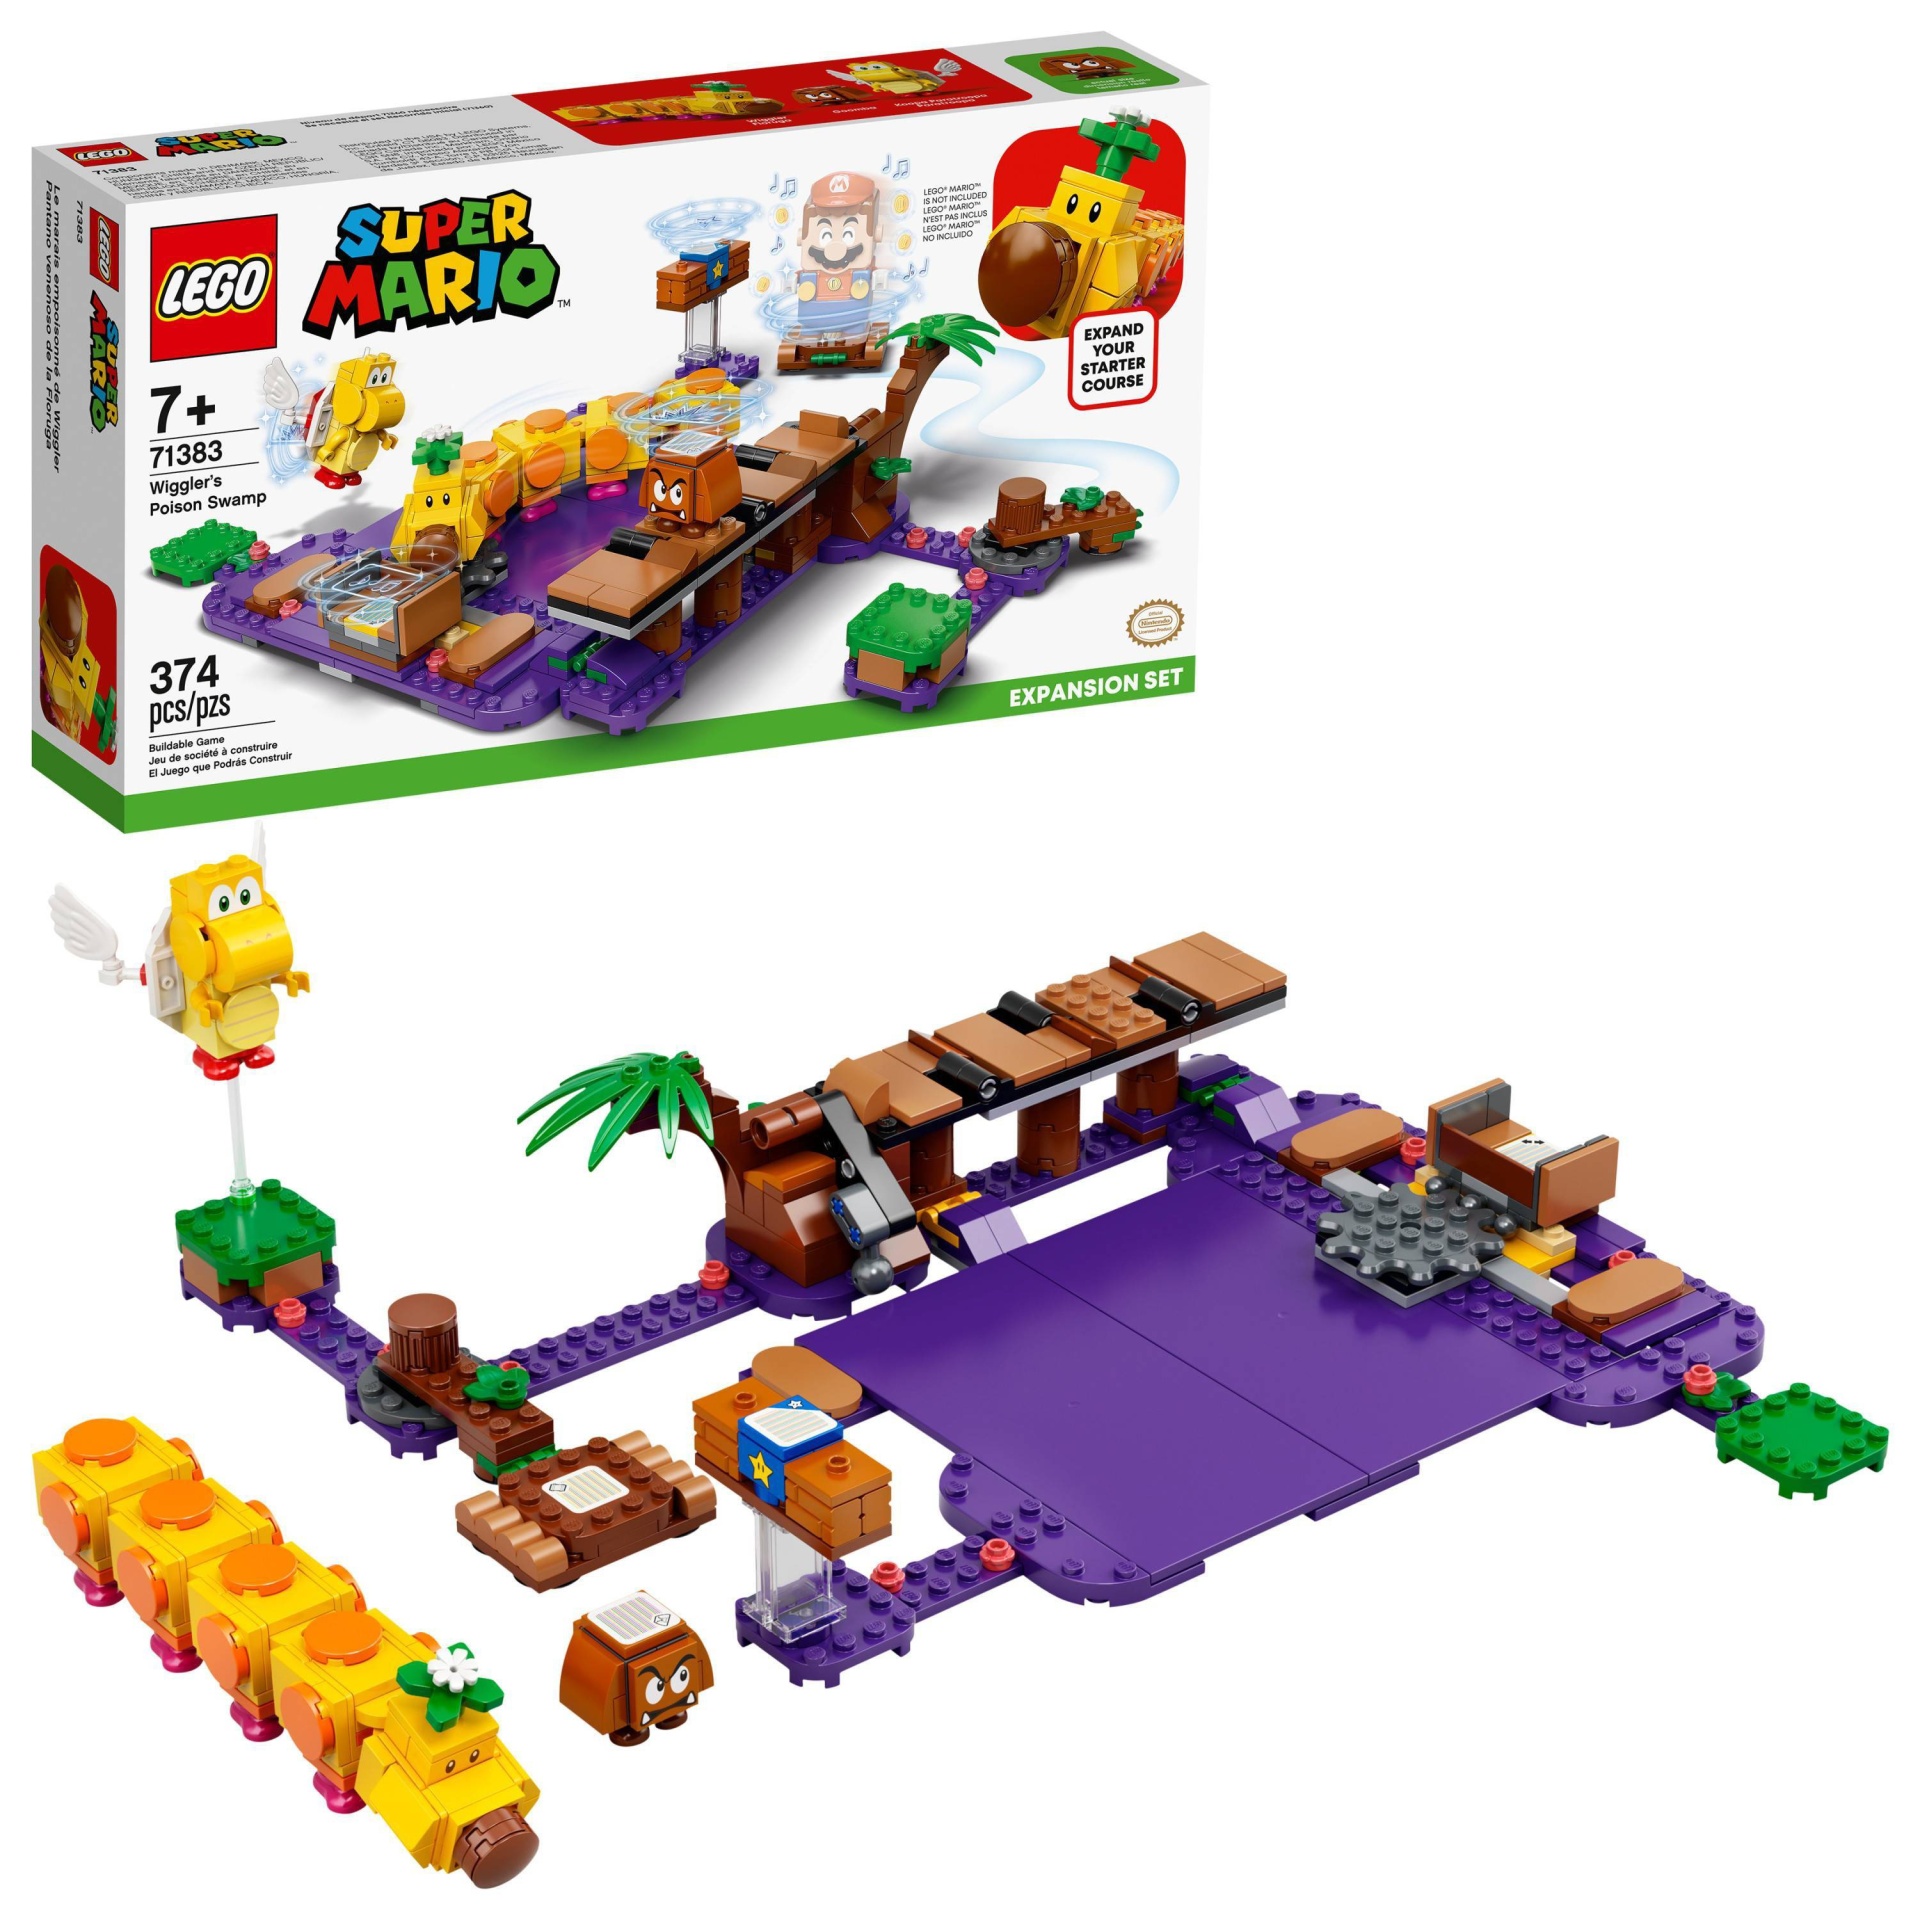 slide 1 of 7, LEGO Super Mario Wiggler's Poison Swamp Expansion Set 71383, 1 ct